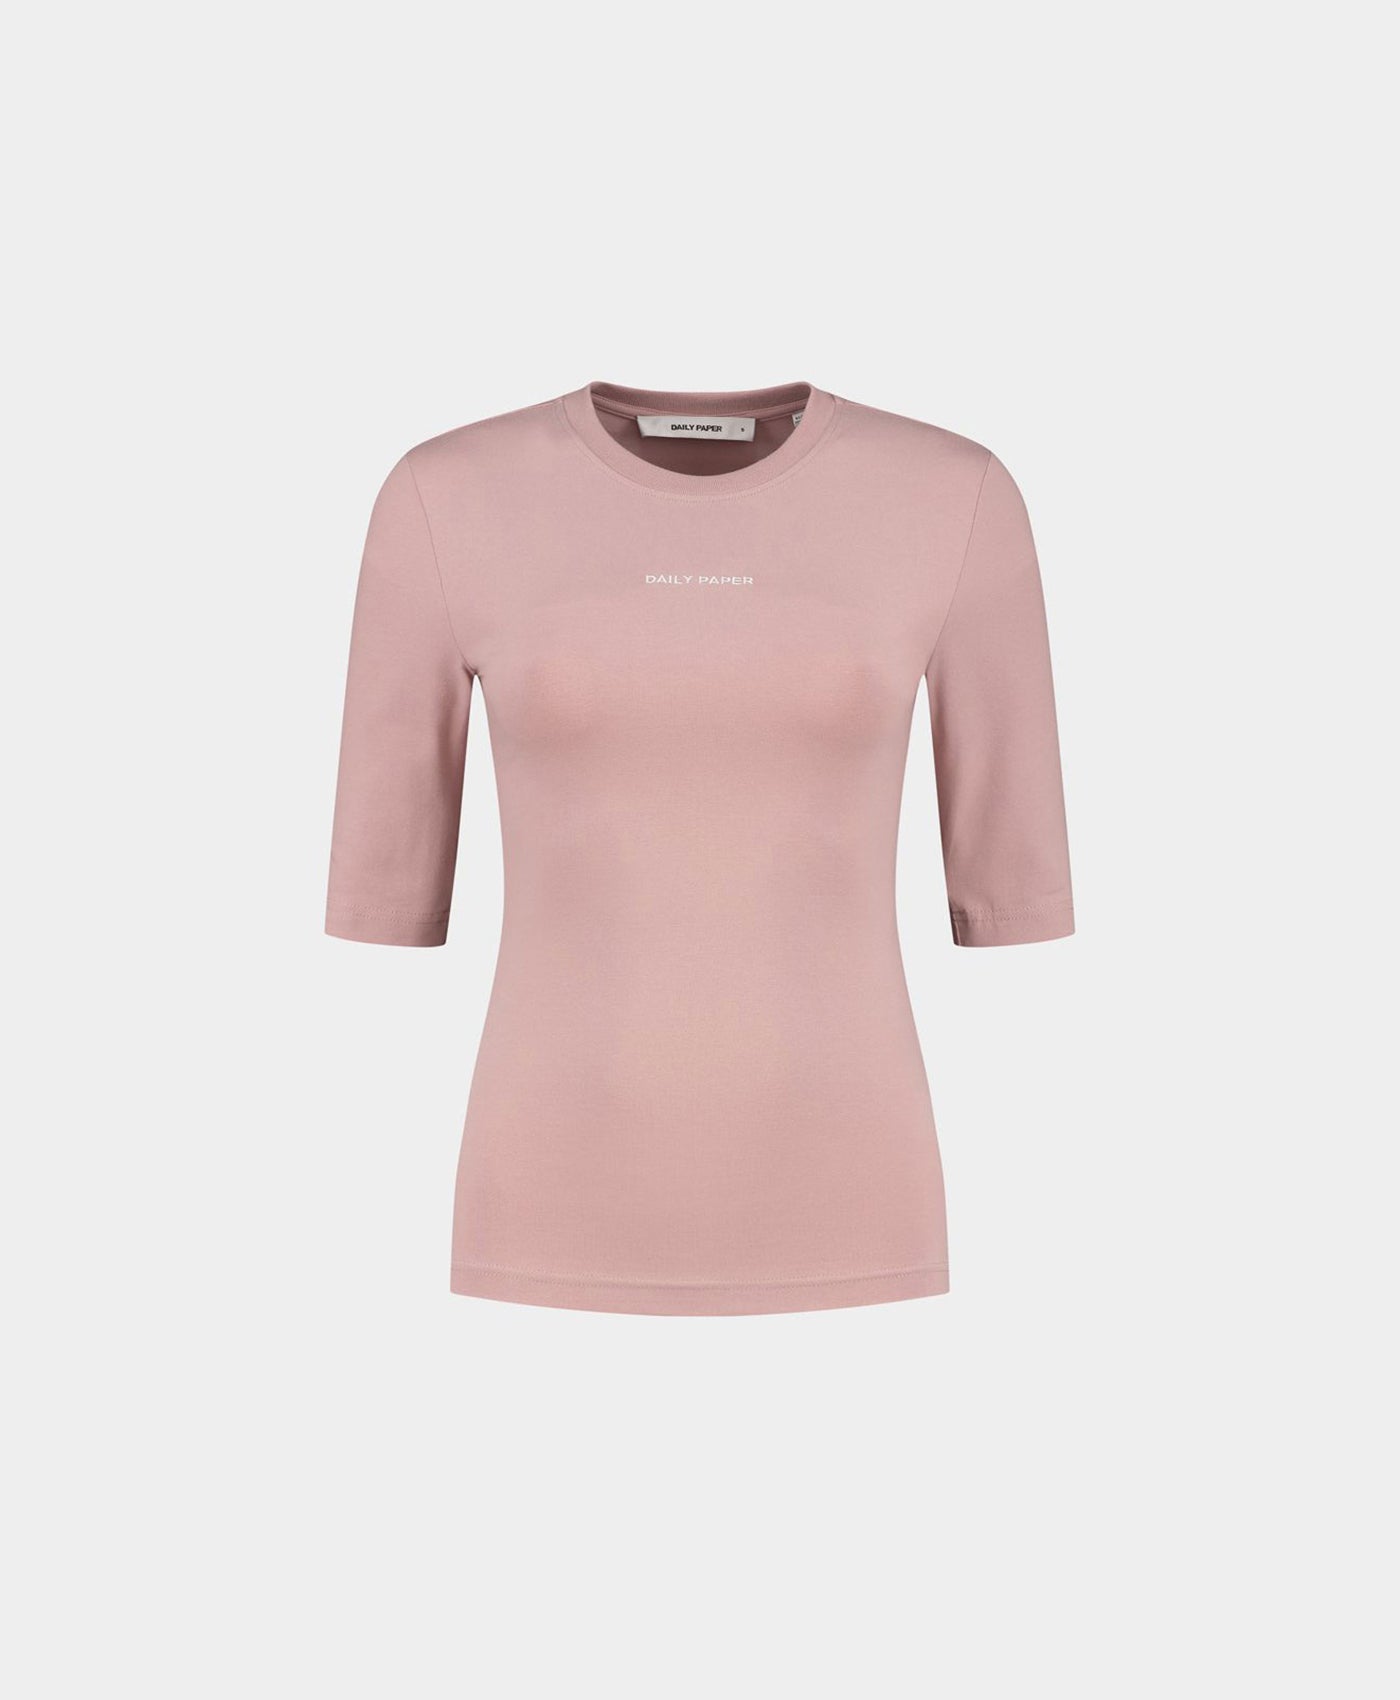 DP - Old Pink Ehalf T-Shirt - Packshot - Front Rear